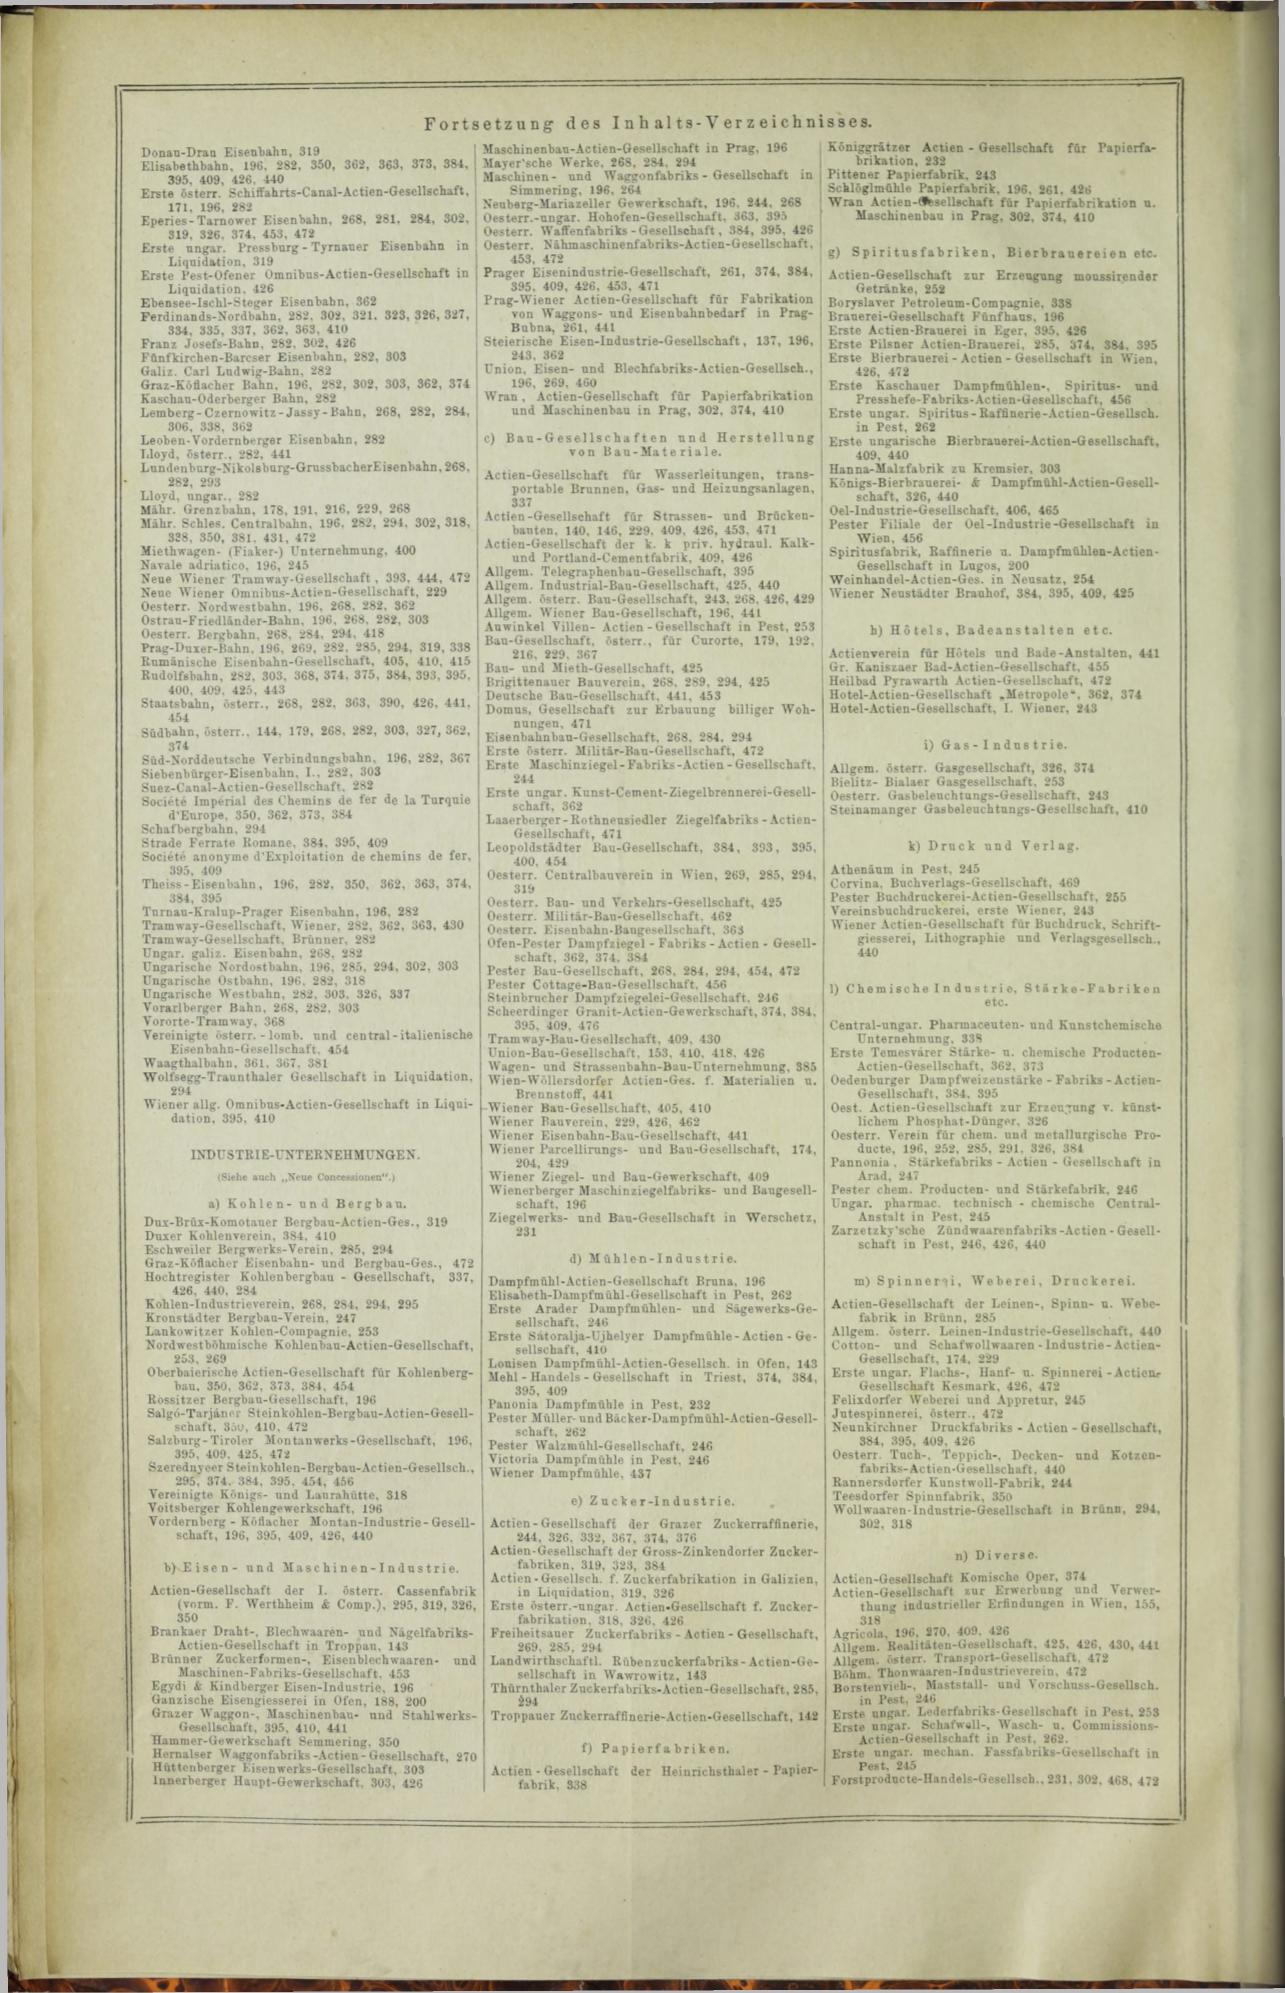 Der Tresor 03.12.1872 - Seite 20